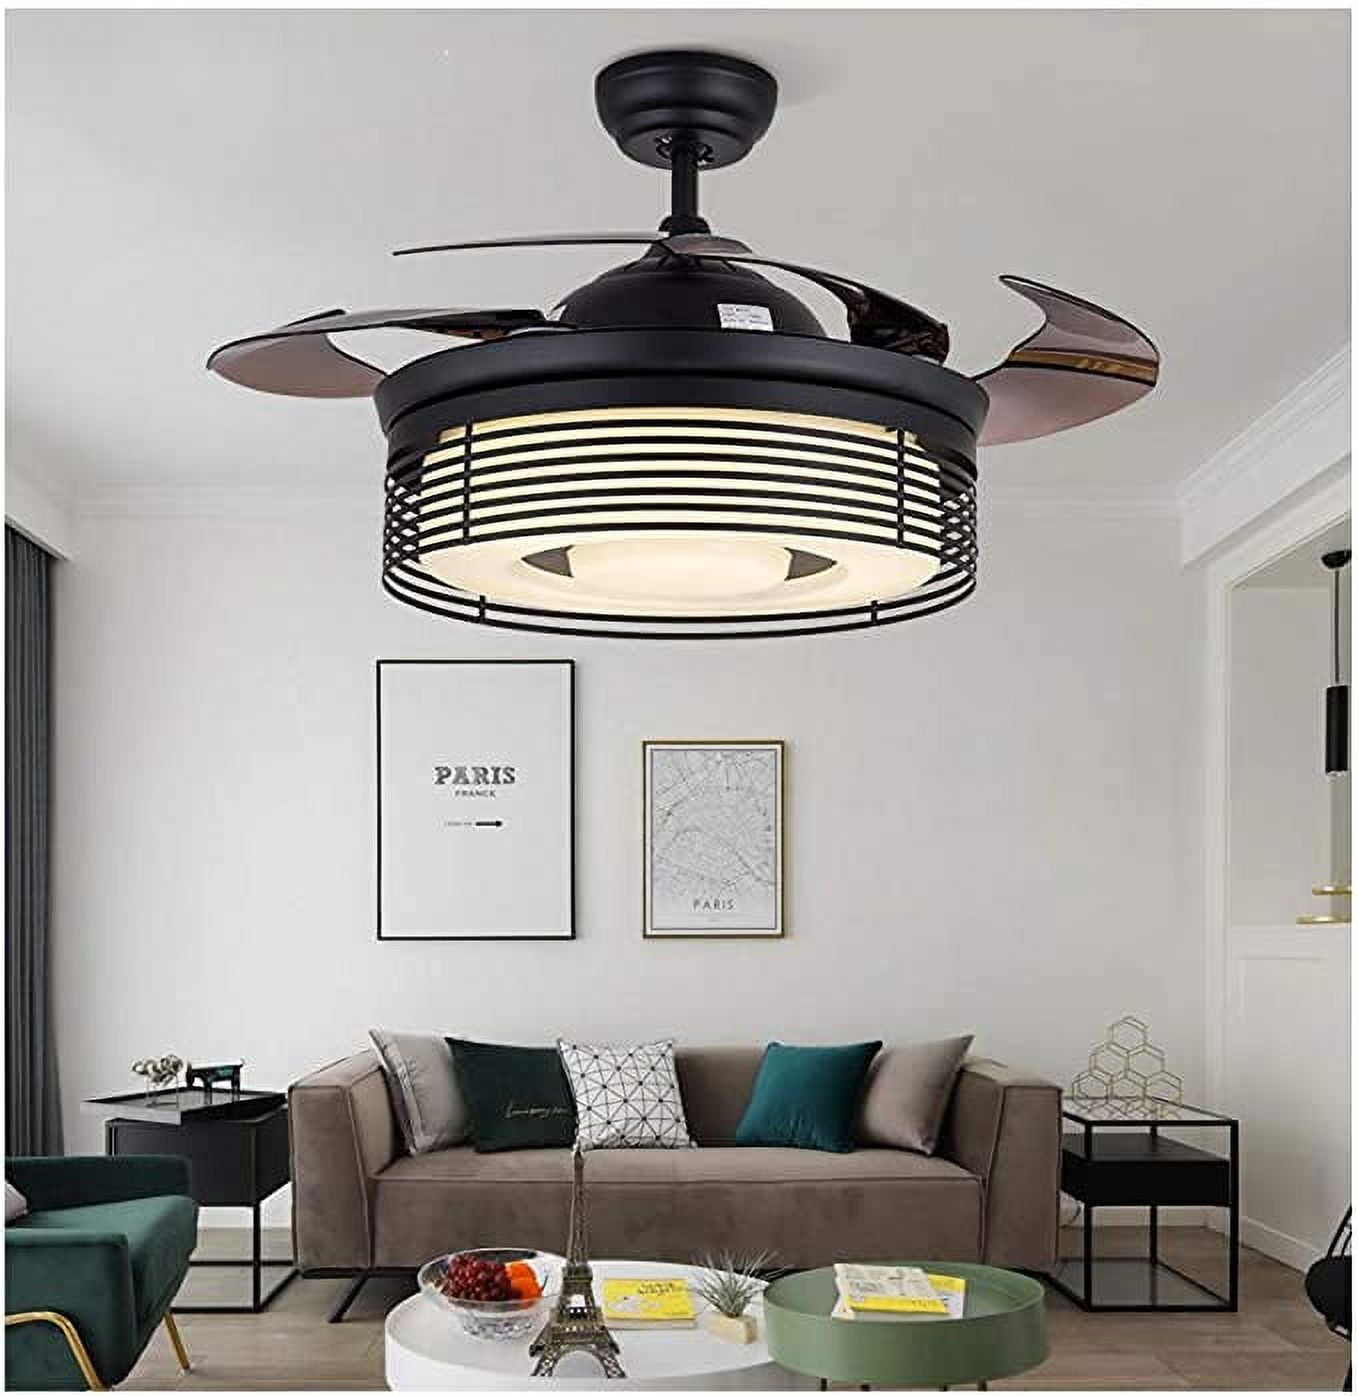 Kpibest 42 Inch Retractable Ceiling Fan